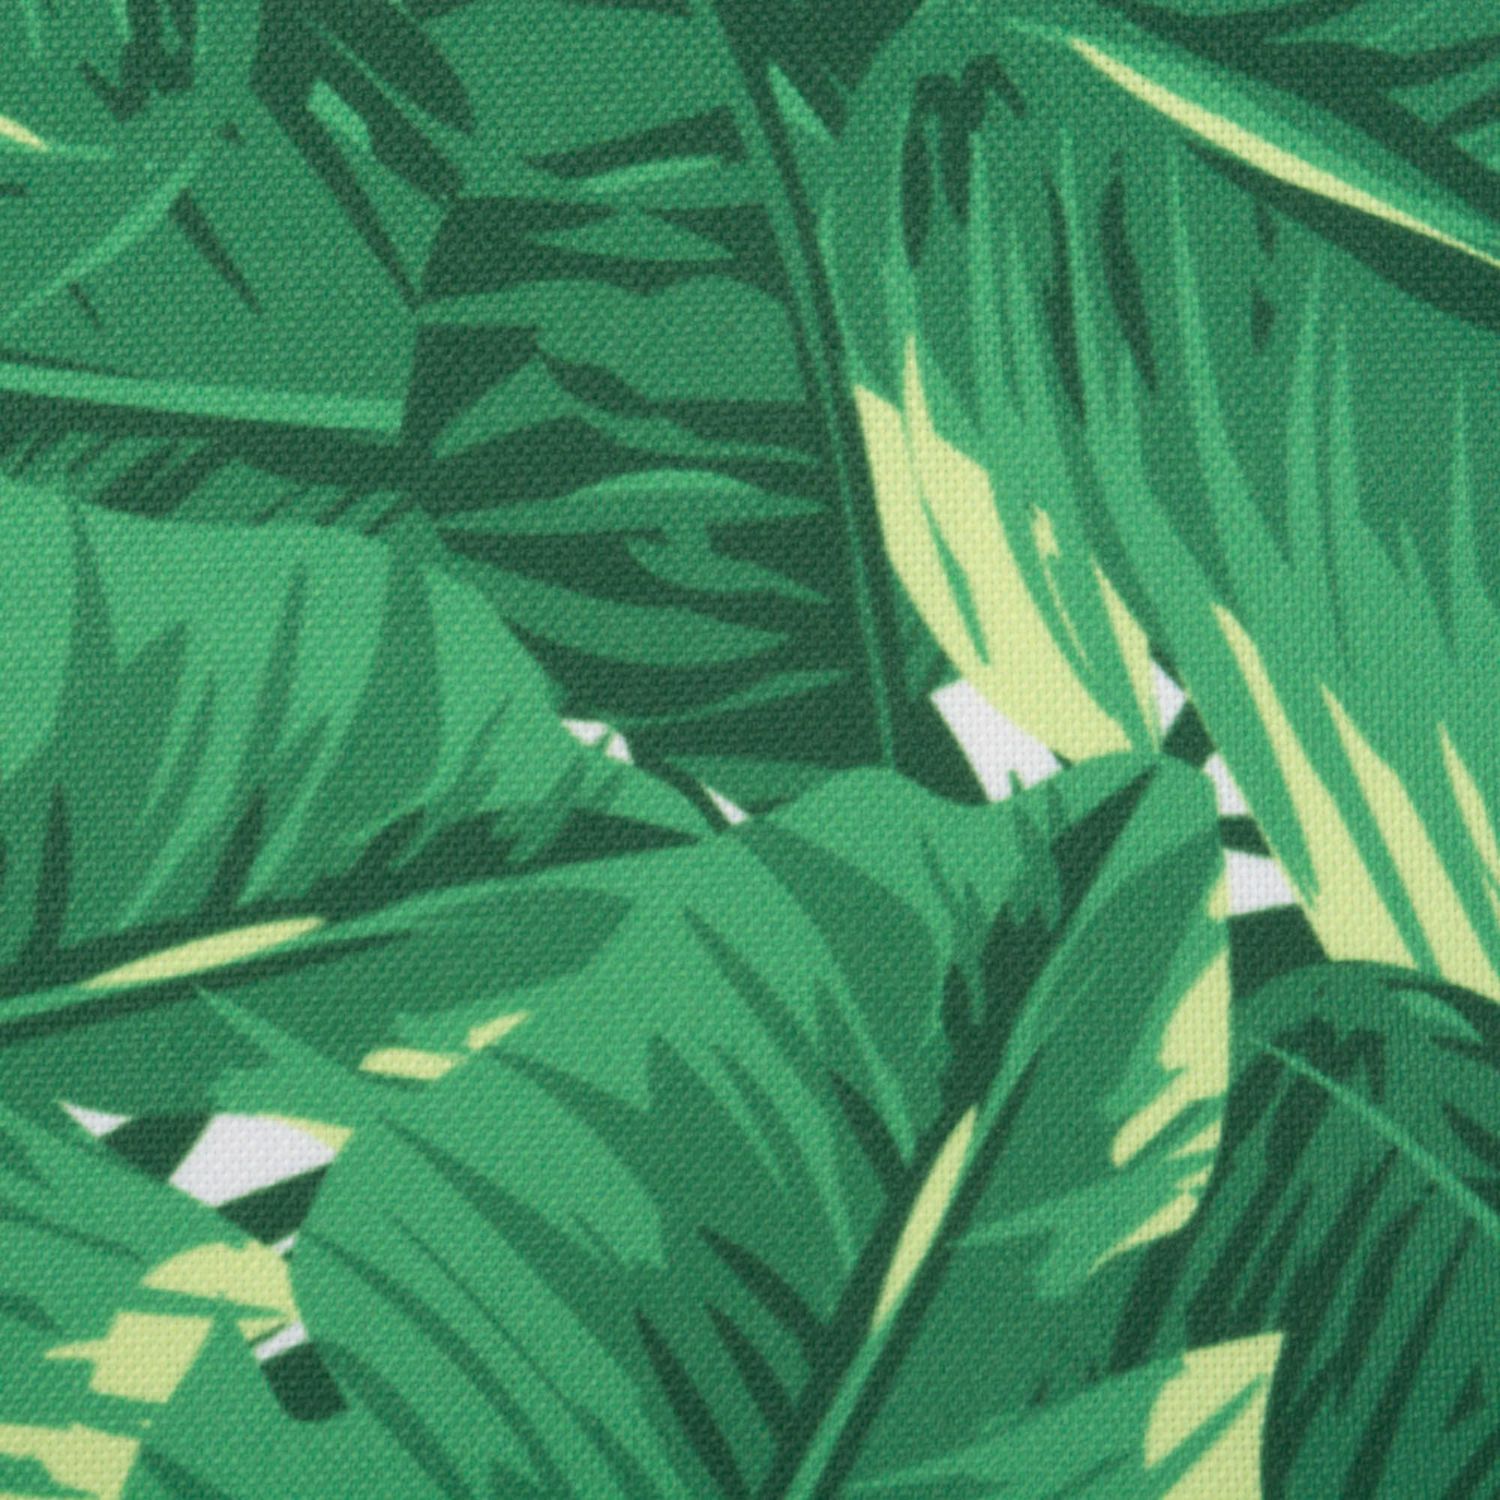 Прямоугольная скатерть из зелено-белых банановых листьев размером 60 x 120 дюймов.